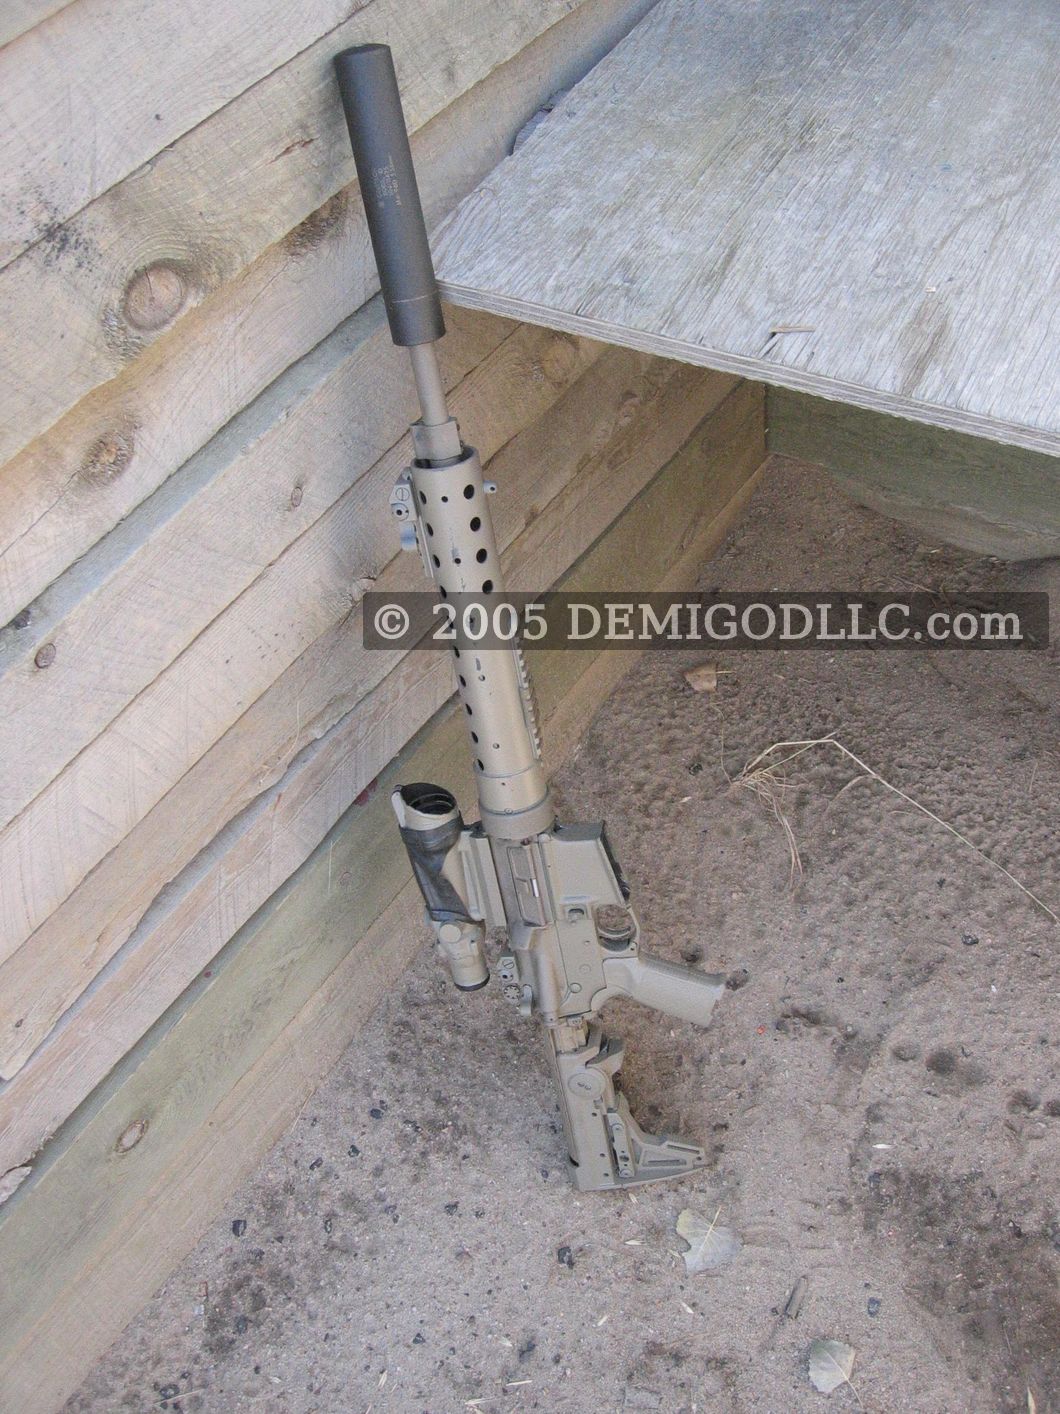 Gemtech M4-96D caliber 5.56mm Suppressor
, photo 